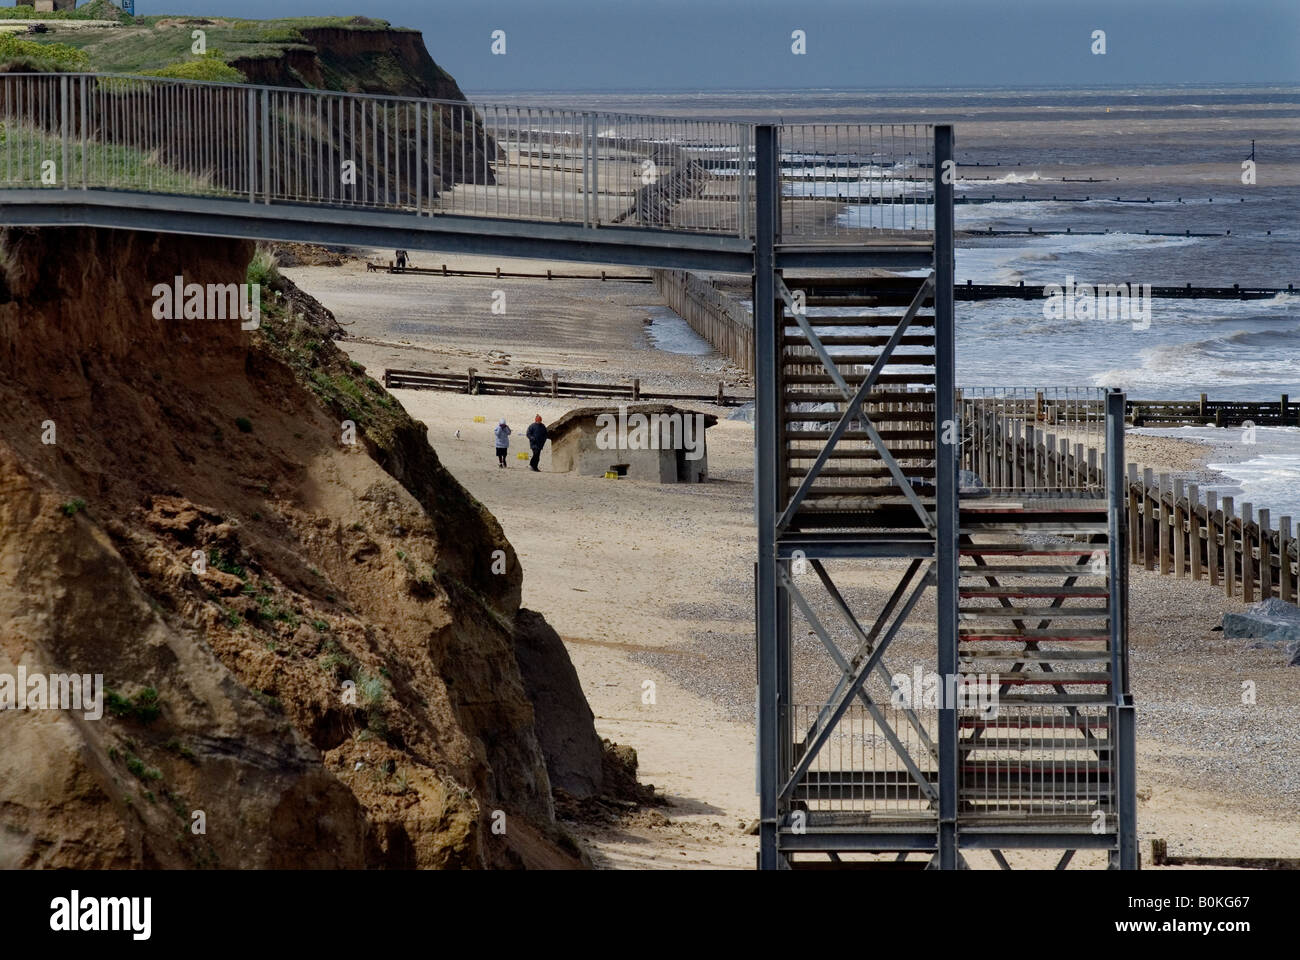 La Grande-Bretagne Angleterre Royaume-Uni érosion Érosion côtière plage mer réchauffement de la chute spectaculaire de l'Norfolk Happisburgh Assurance Maisons Falaise Banque D'Images